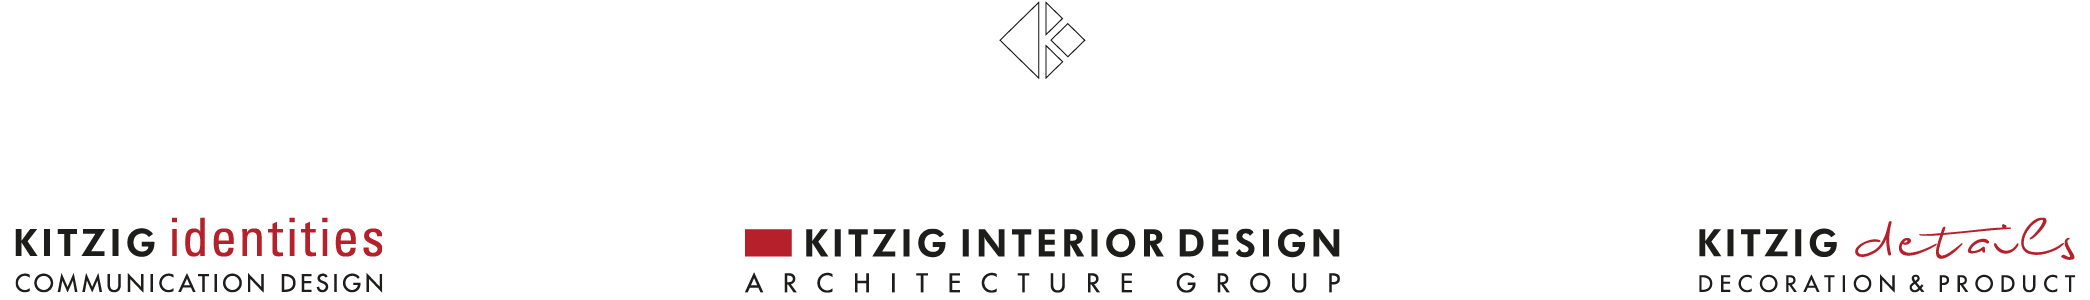 Kitzig Interior Design Gmbh Innenarchitektur Architektur